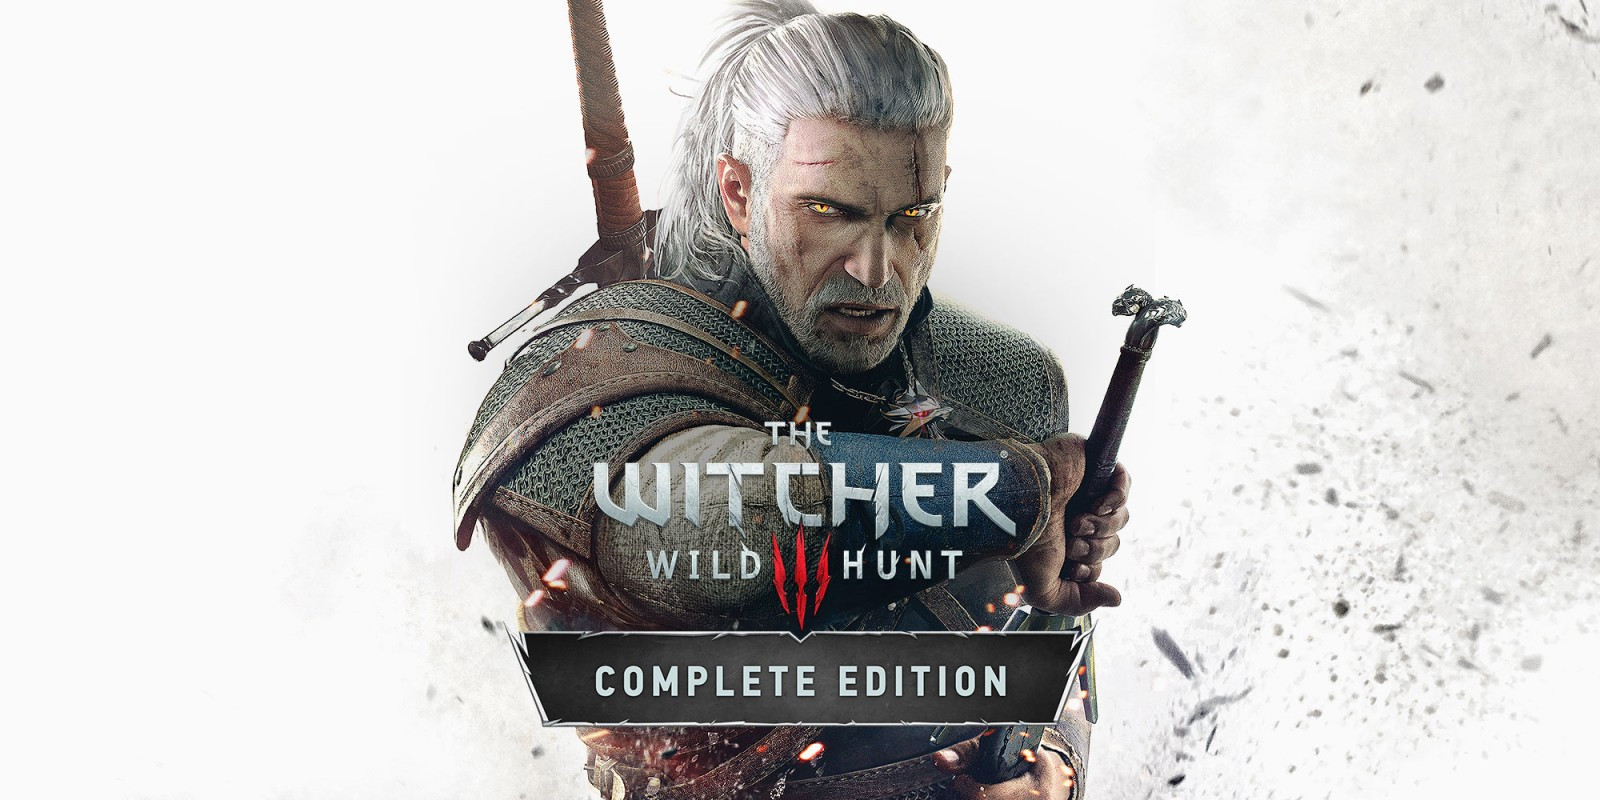 The Witcher 3 complète Edition: sortie prévue en 2021 sur current gen !